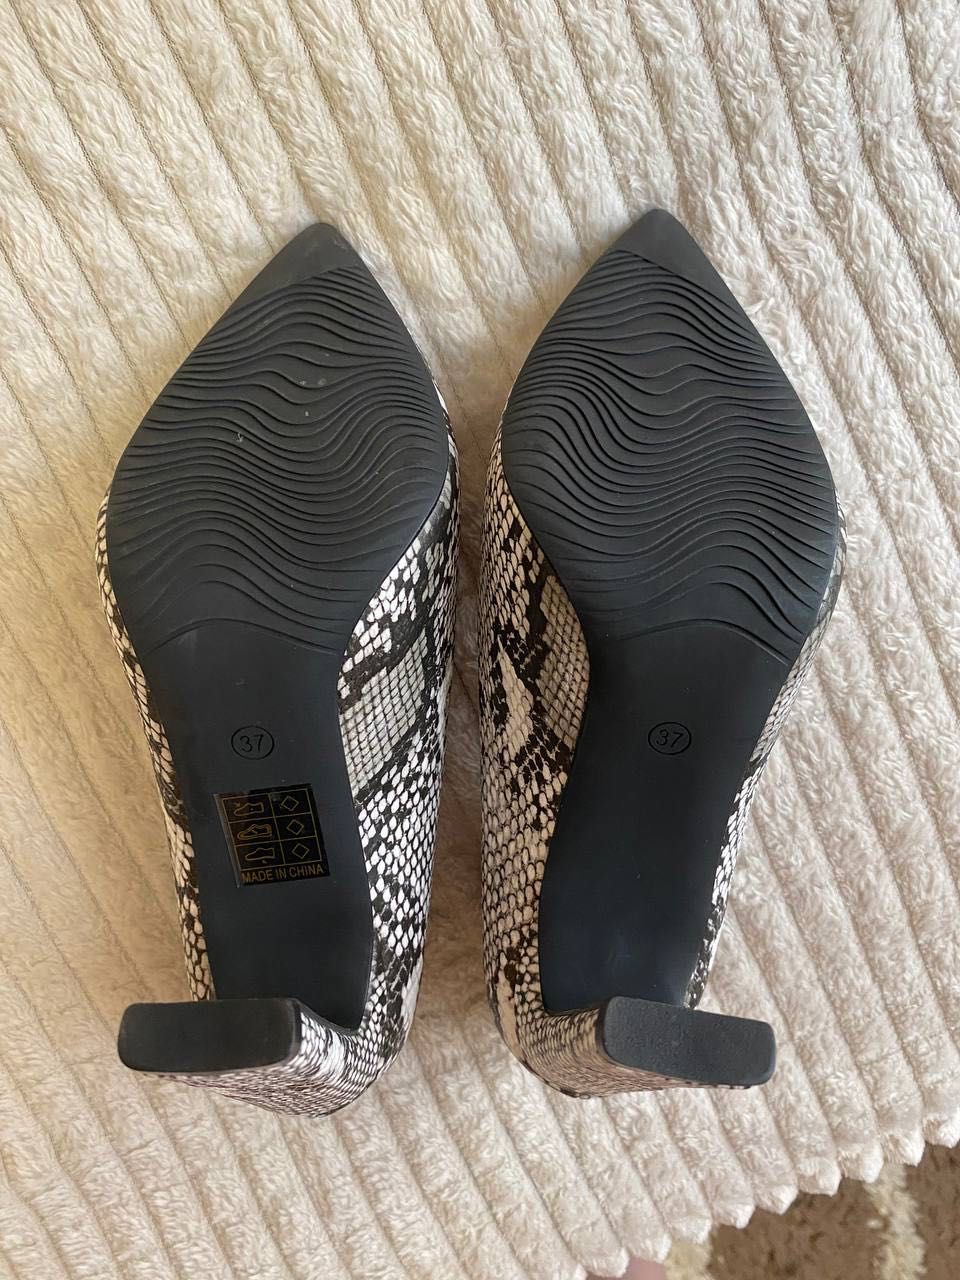 Туфлі жіночі зі зміїним принтом. 37 розмір